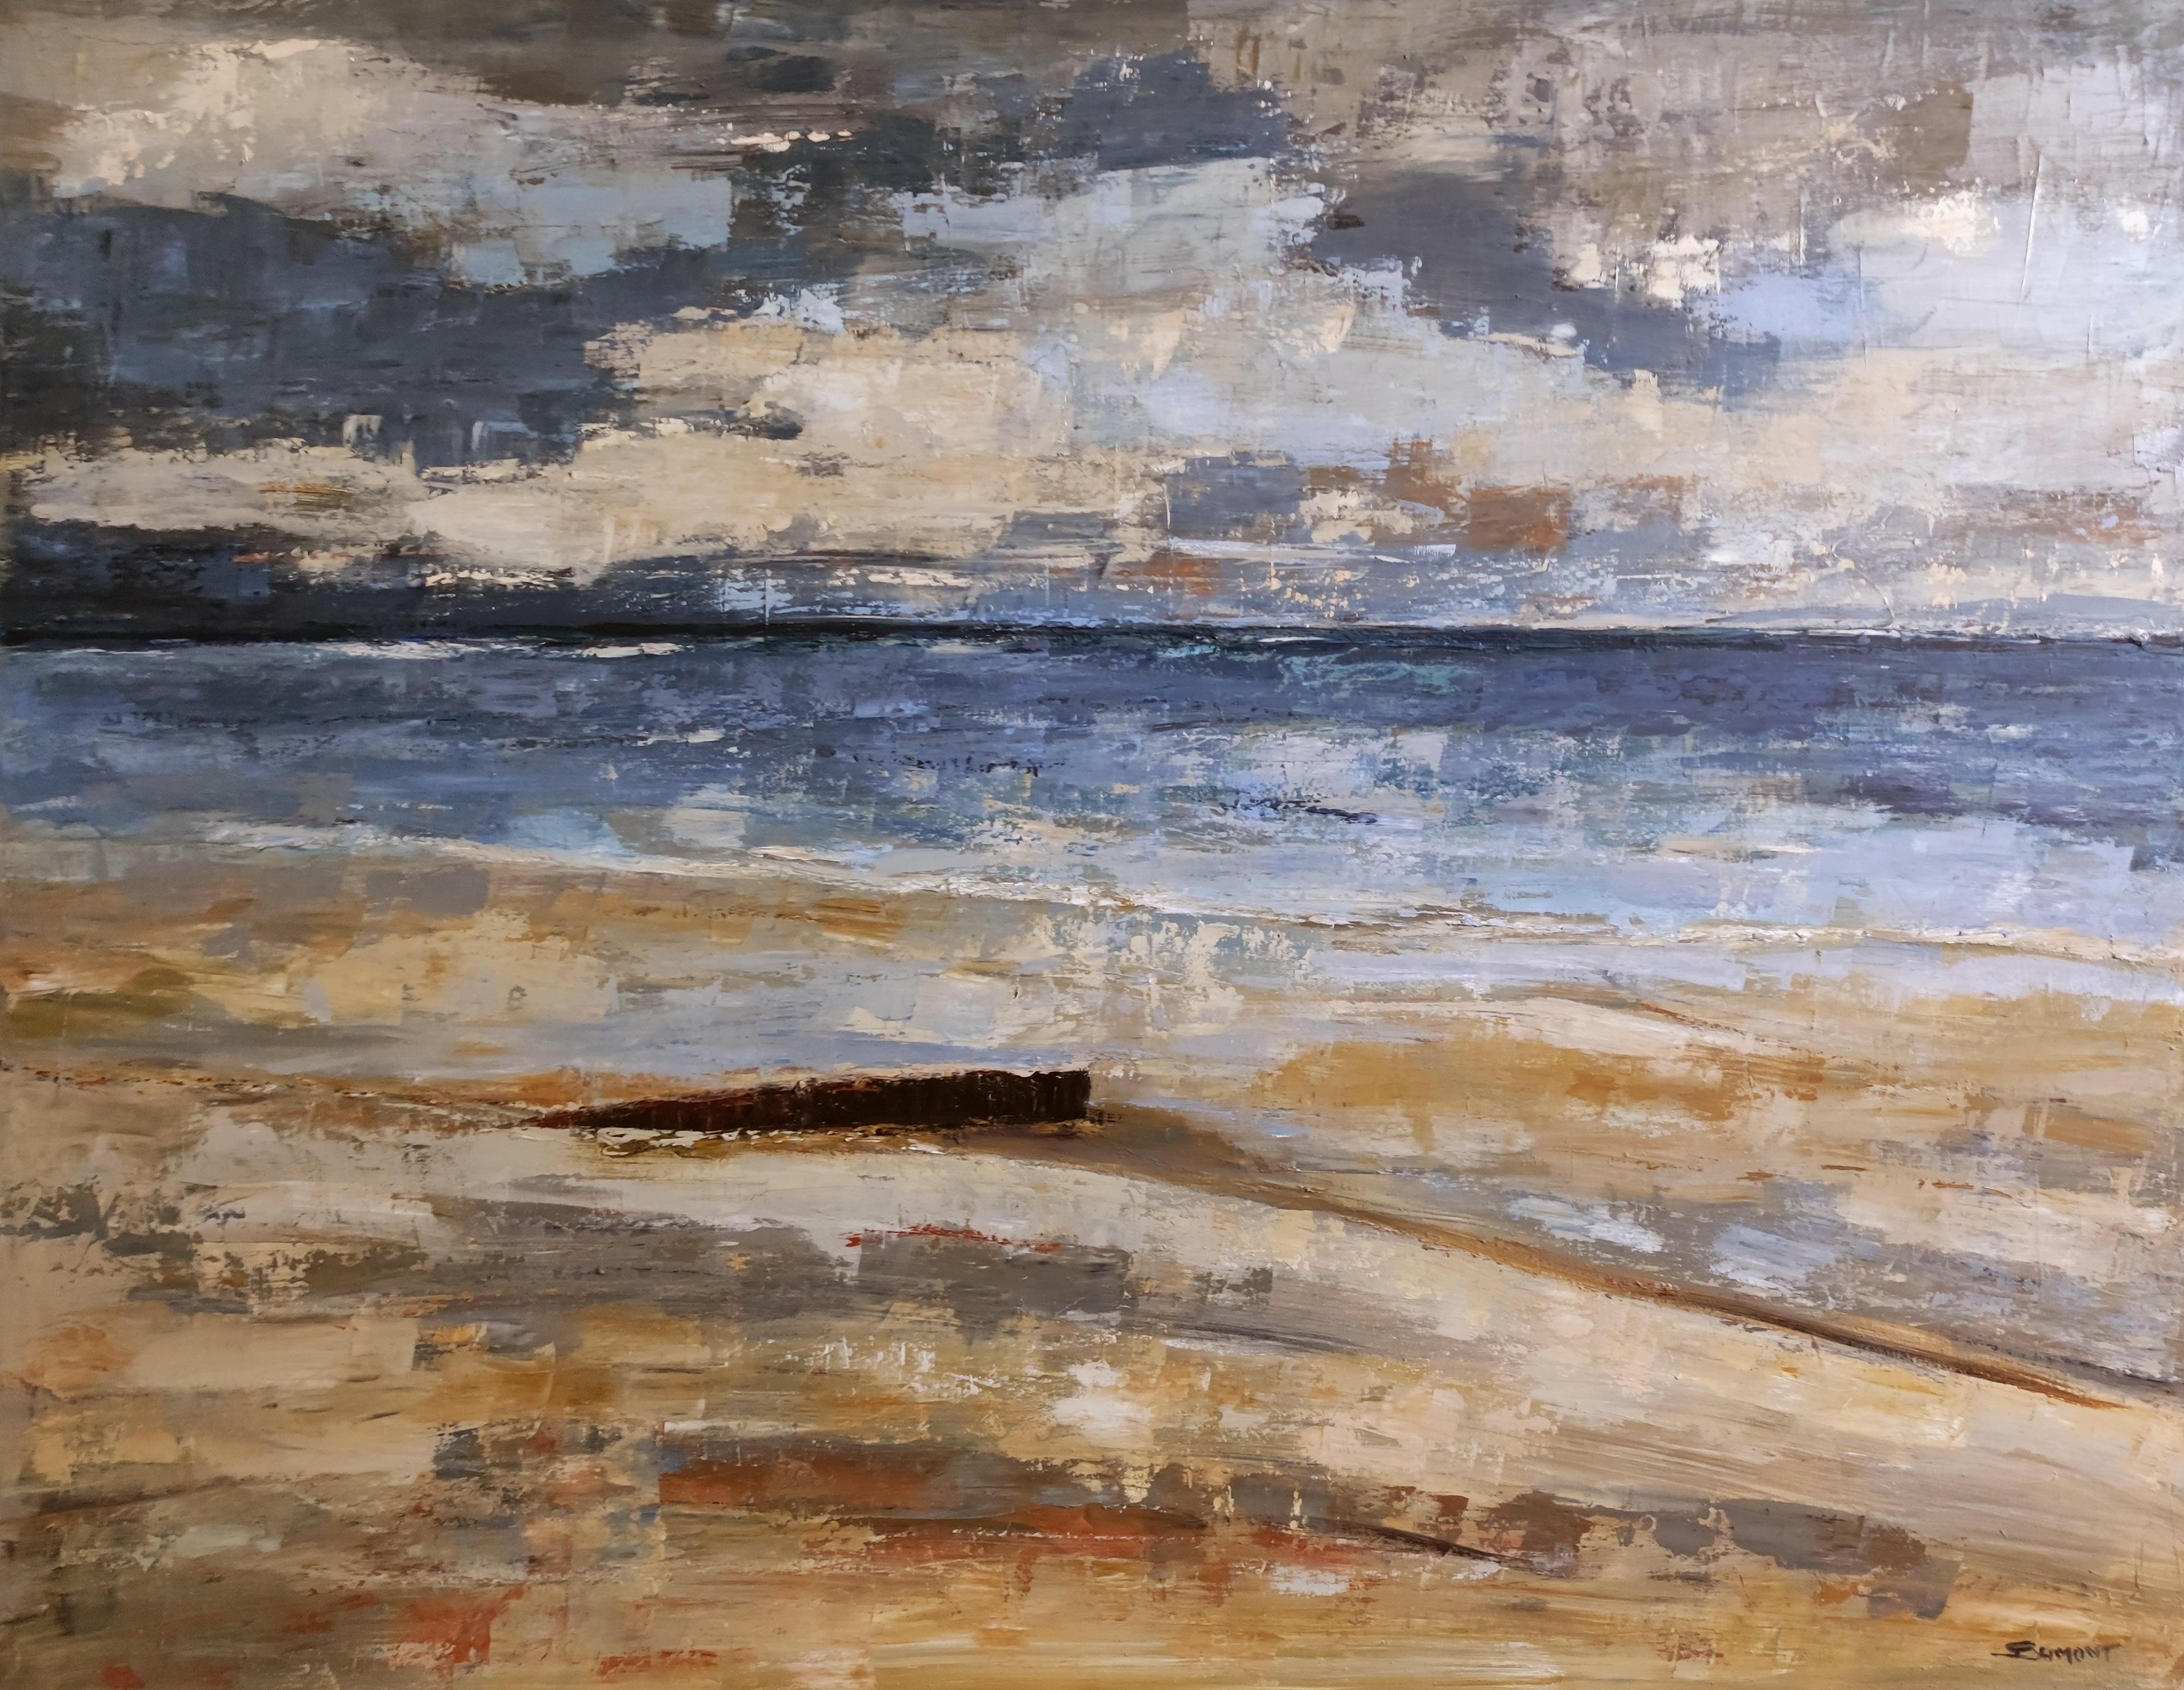 beach, seaside, semi-abstract, oil on canvas, texture, impasto, France